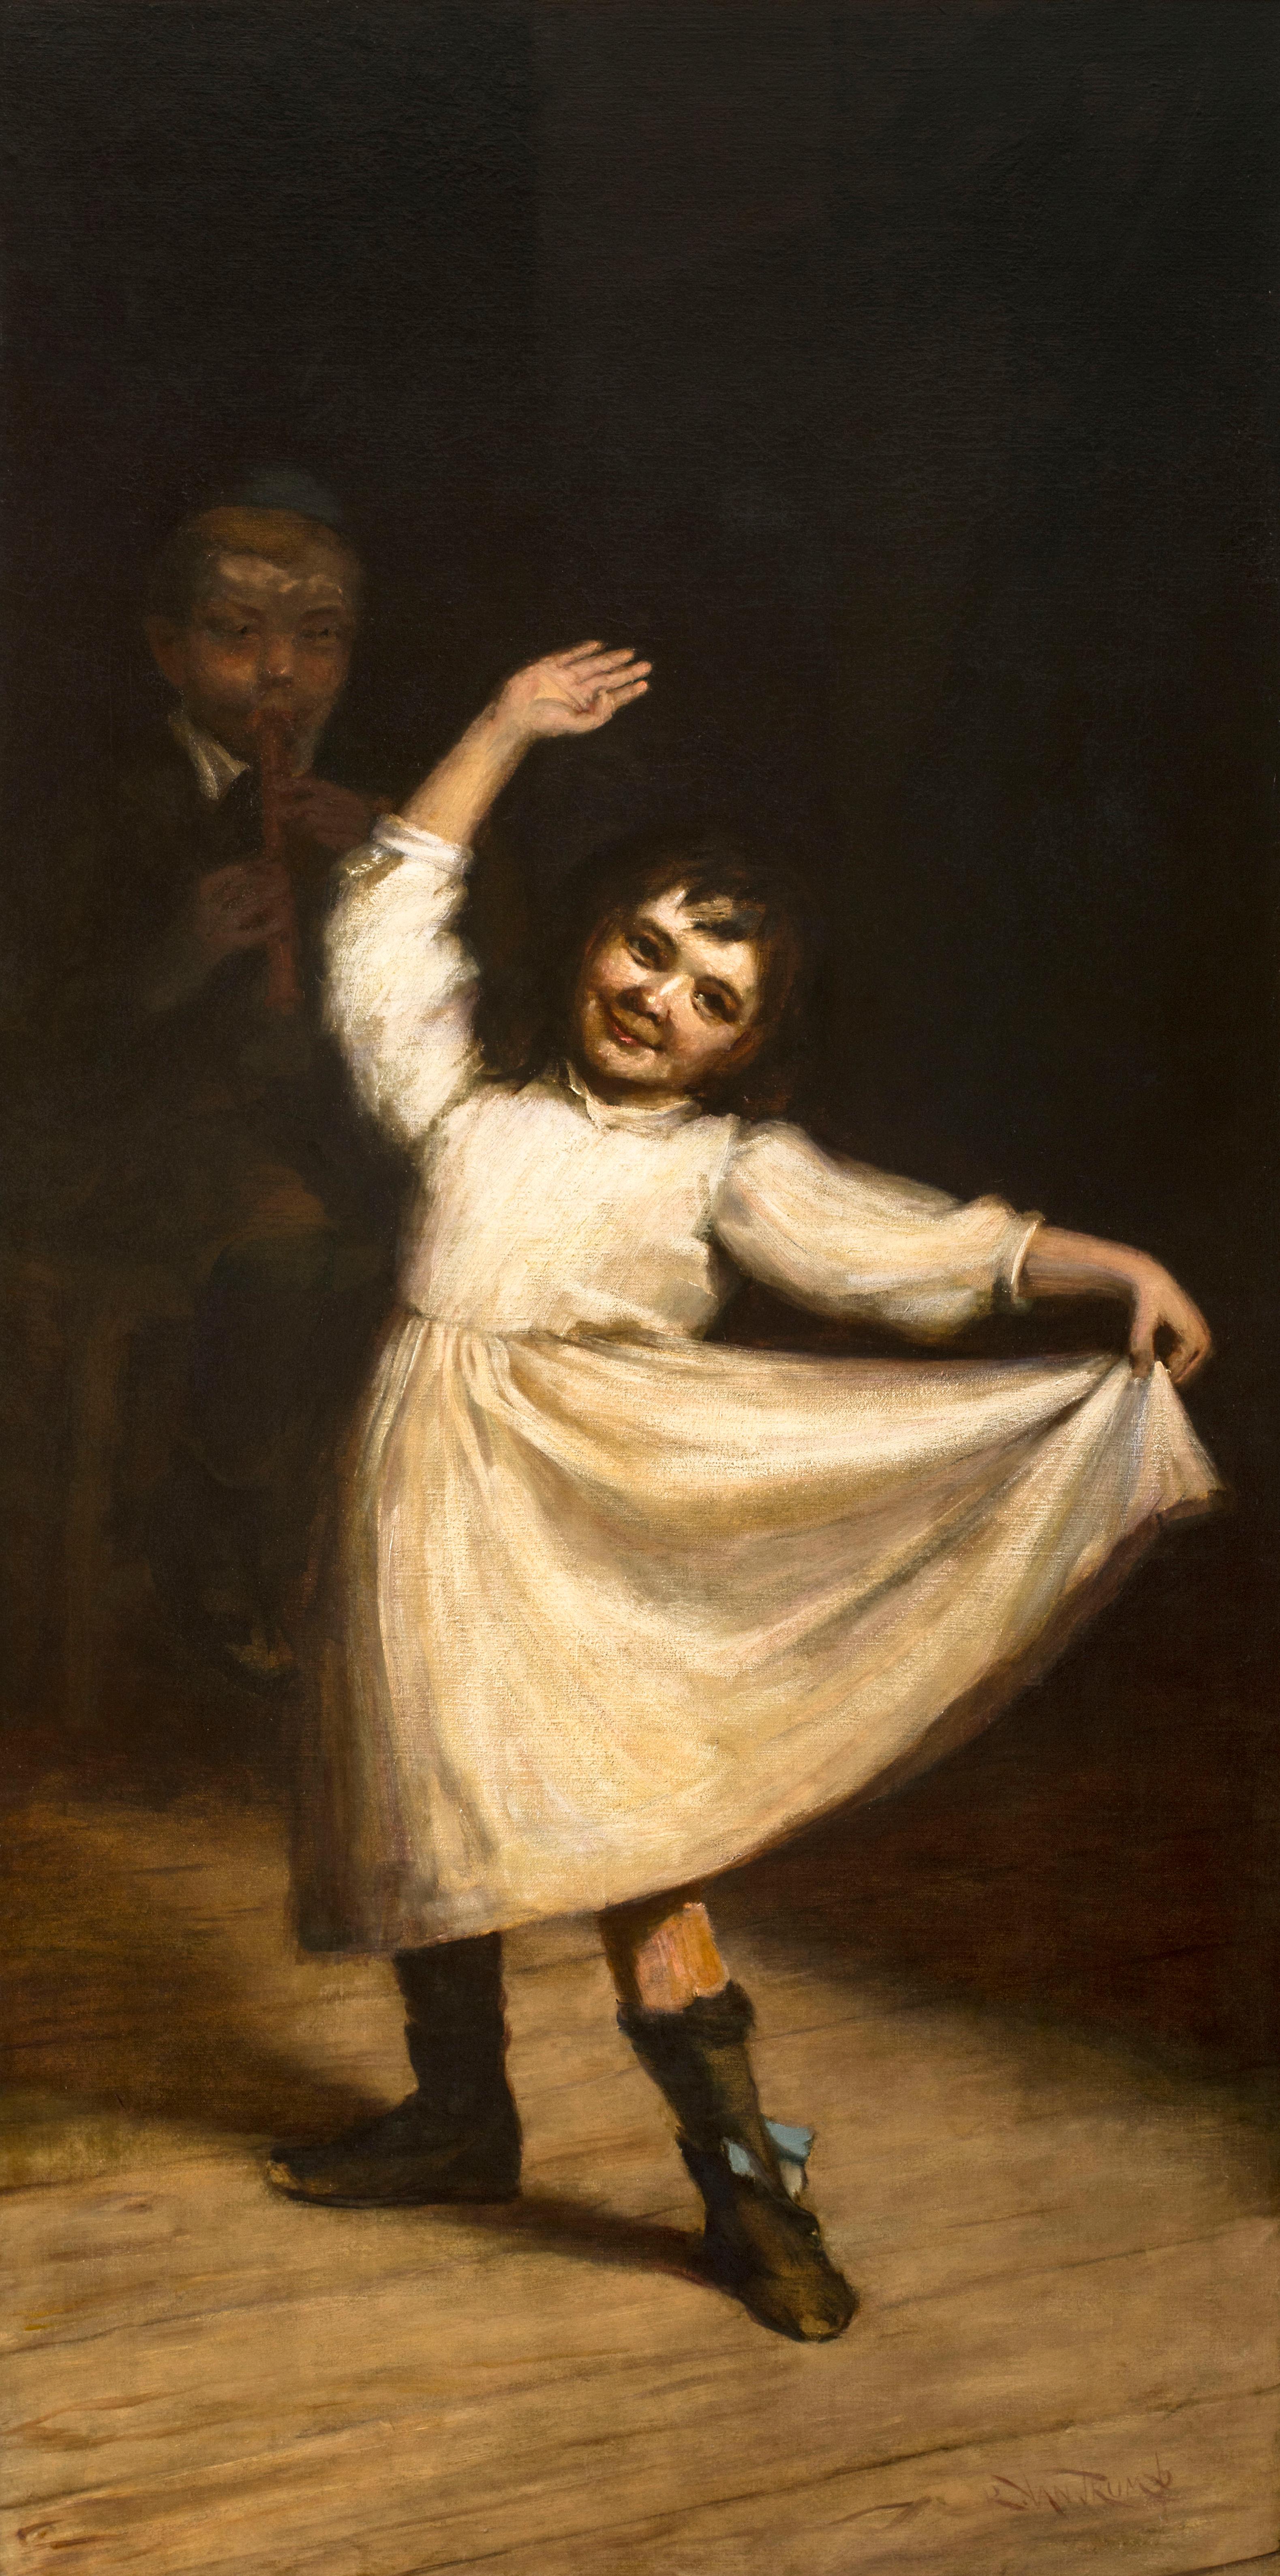 Rebecca Van Trump Landscape Painting - Child Dancing, a figurative work by Rebecca (Newbold) Van Trump (1859-1935)